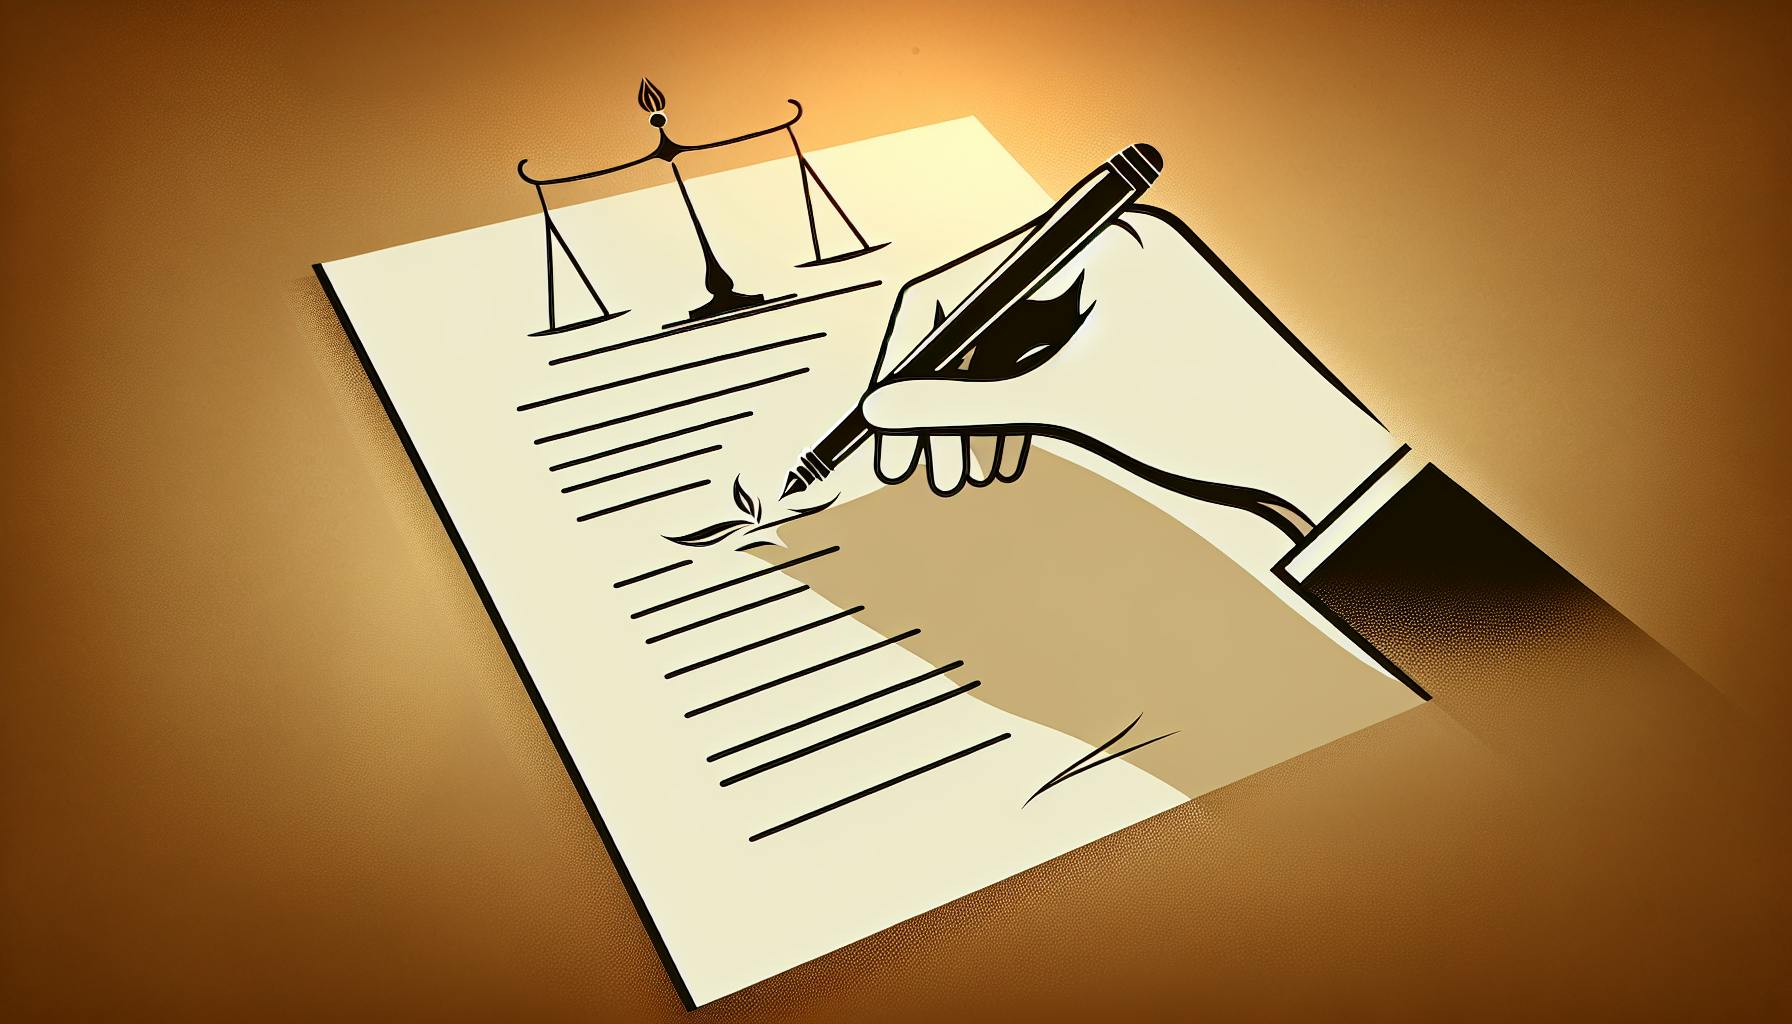 Affidavit: Legal Concept Explained